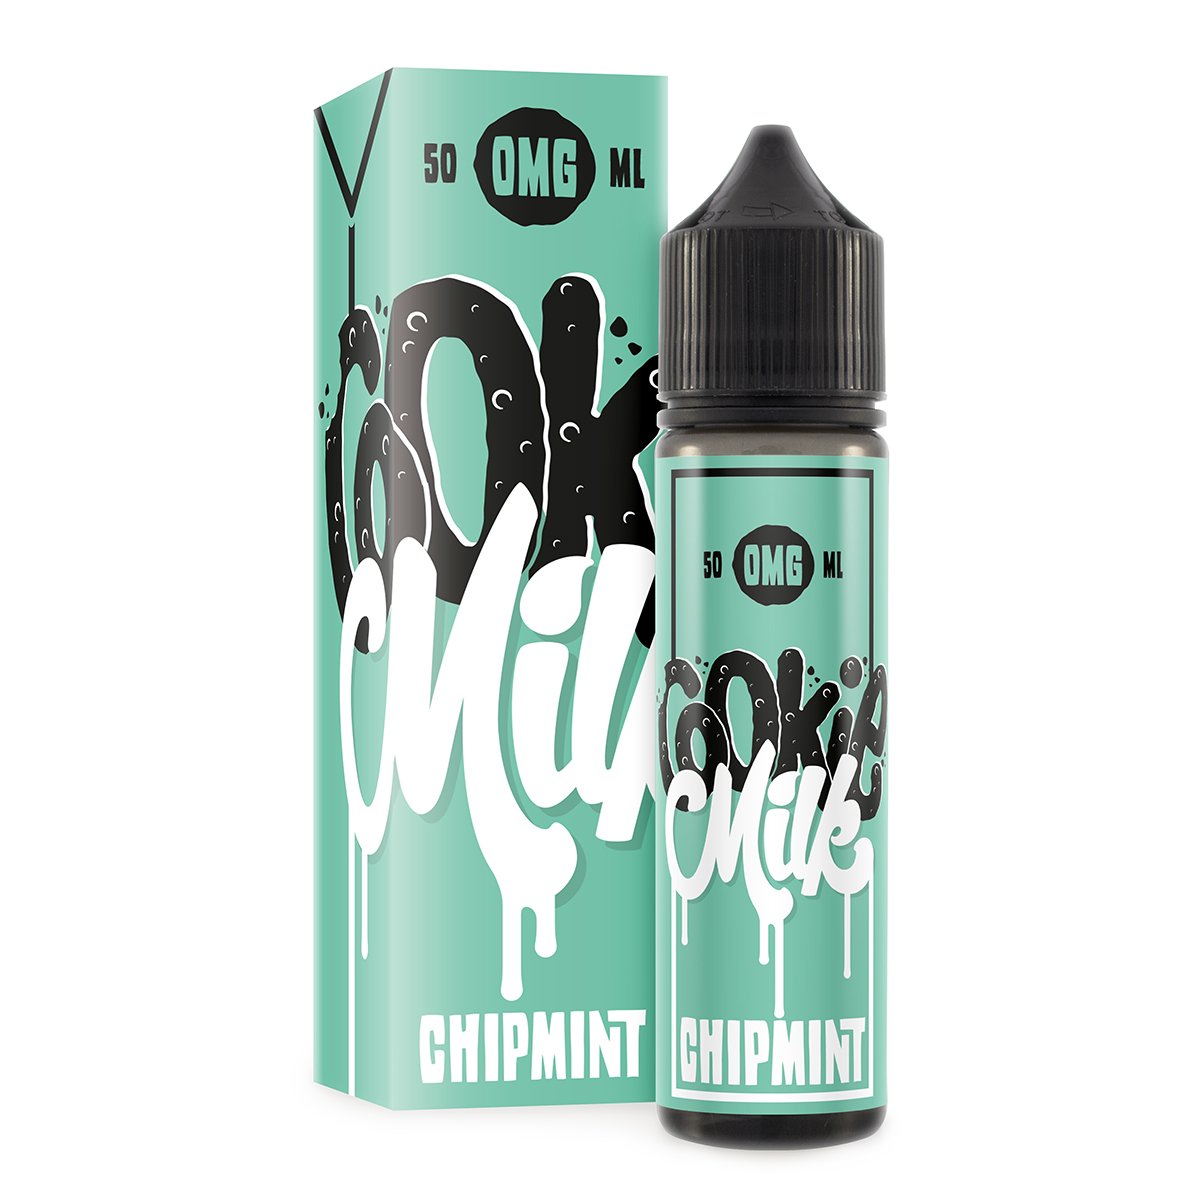 Chipmint Cookie Milk E-liquid by Nom Nomz 50ml Shortfill